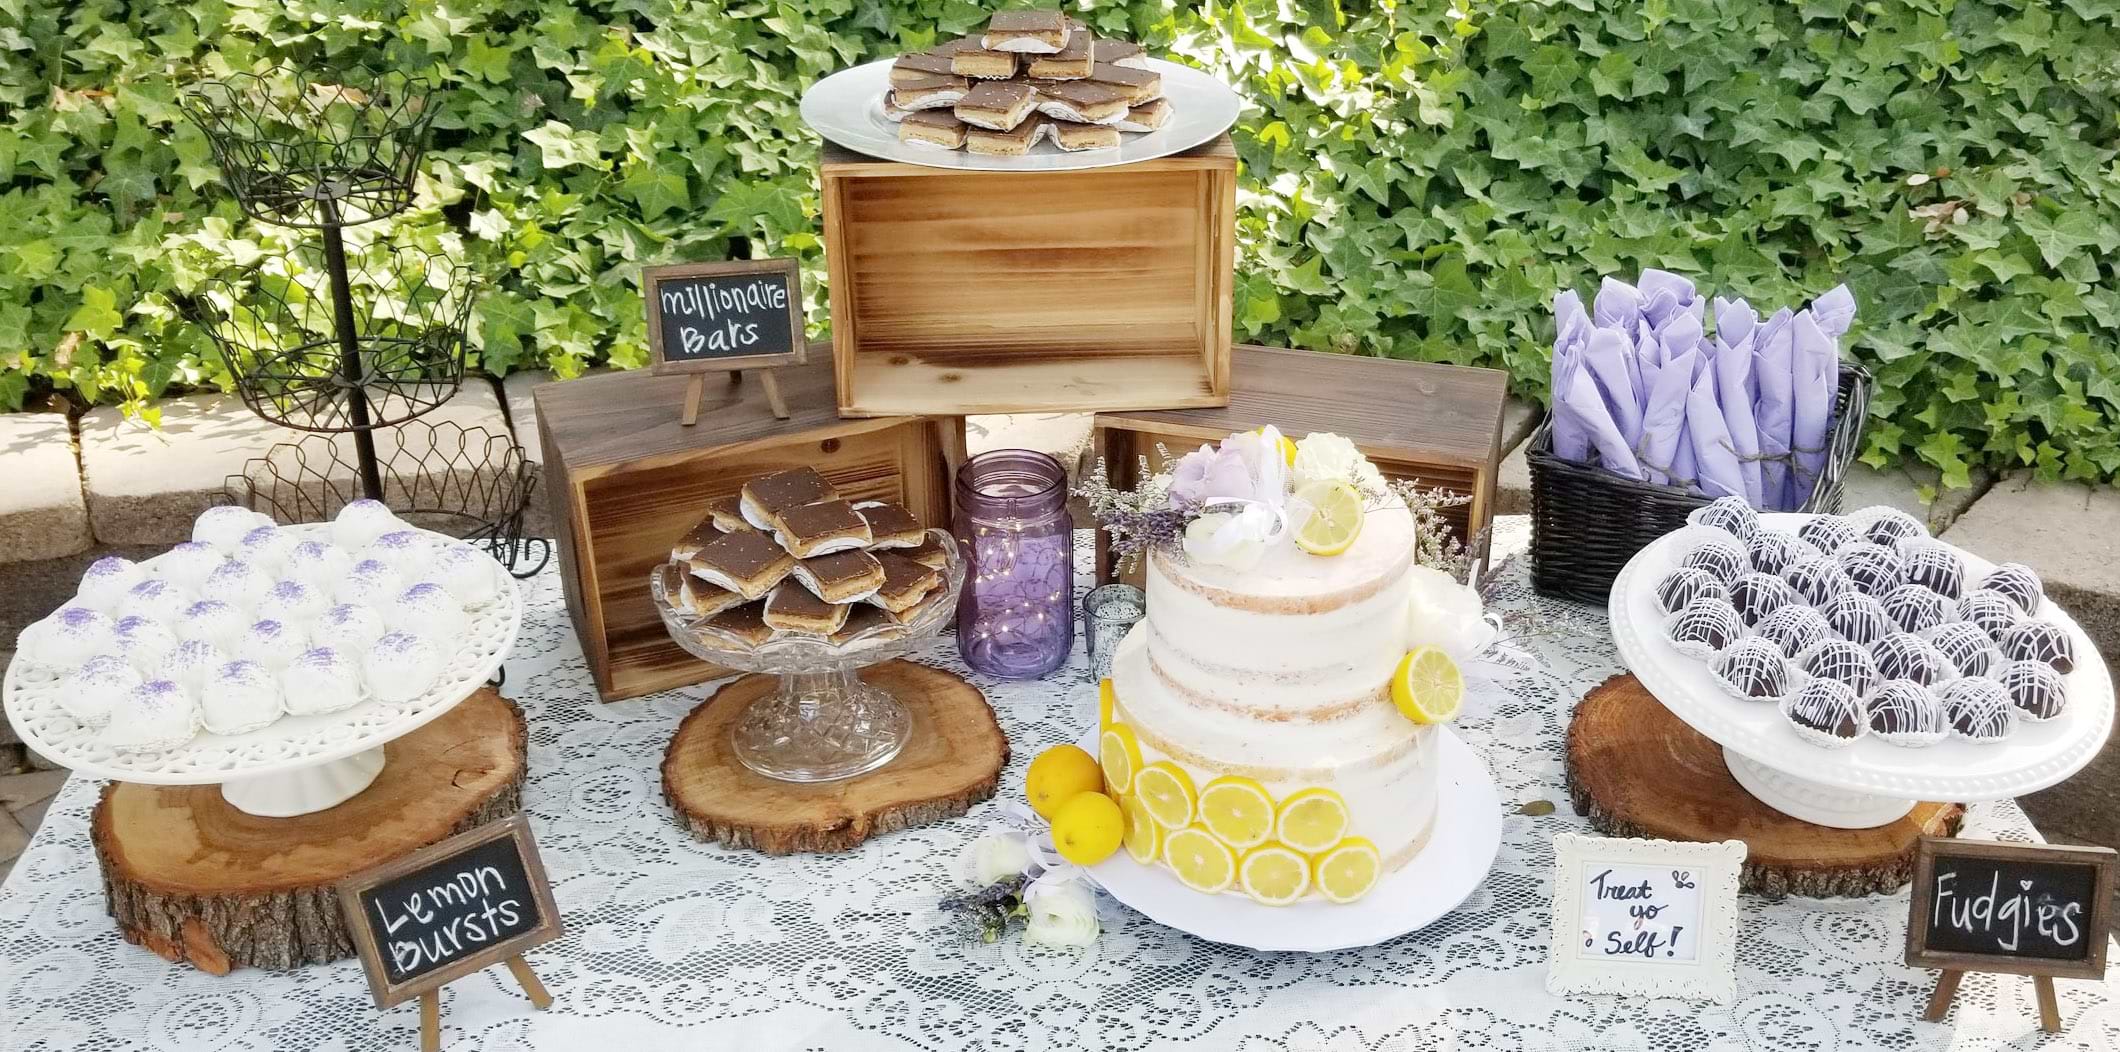 Lemon & Chocolate Wedding Cake Display Table